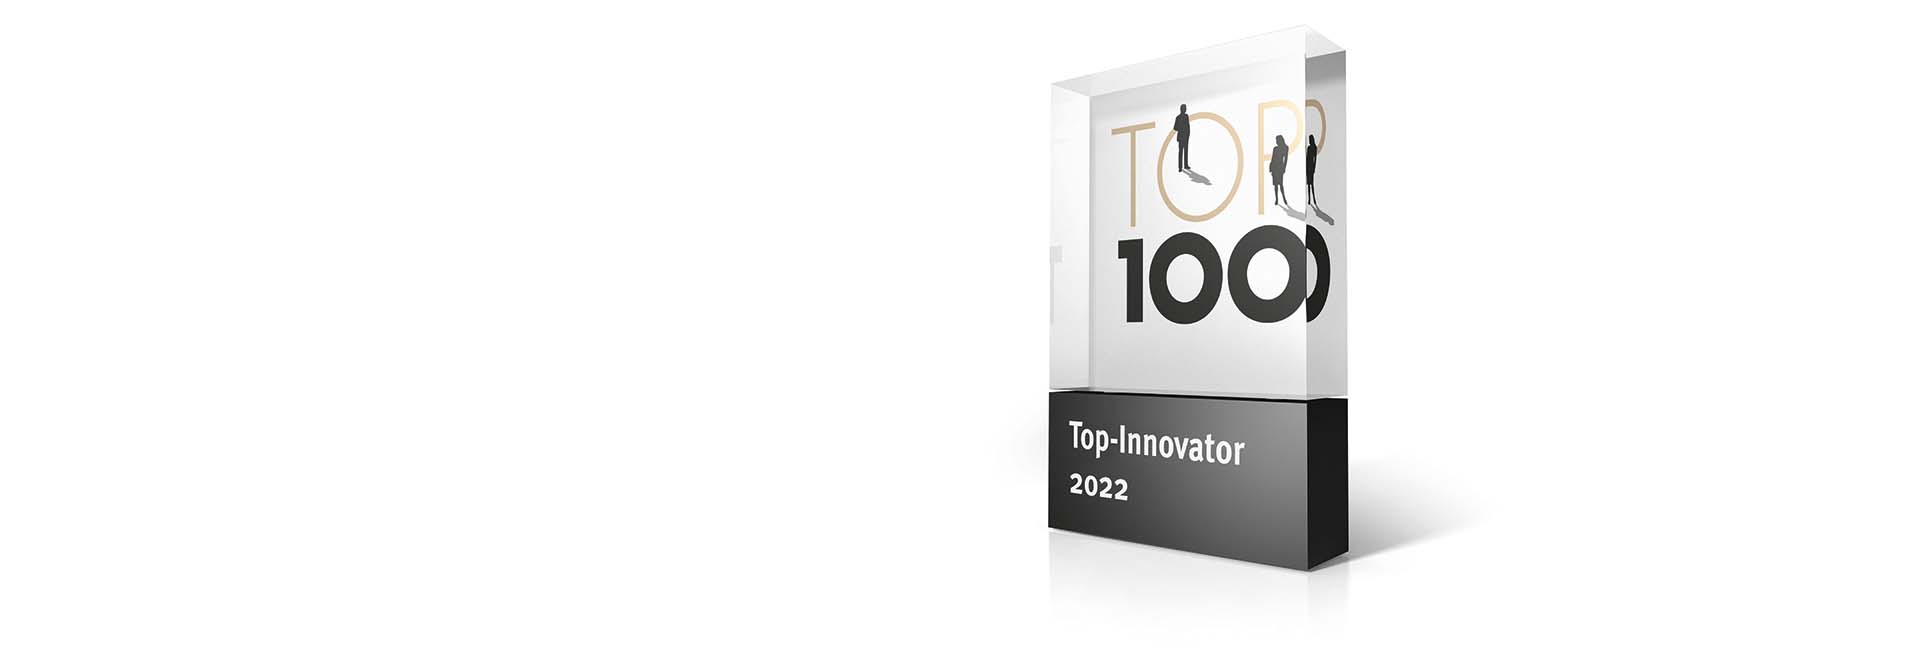 Erwin Junker Maschinenfabrik GmbH receives TOP 100 award